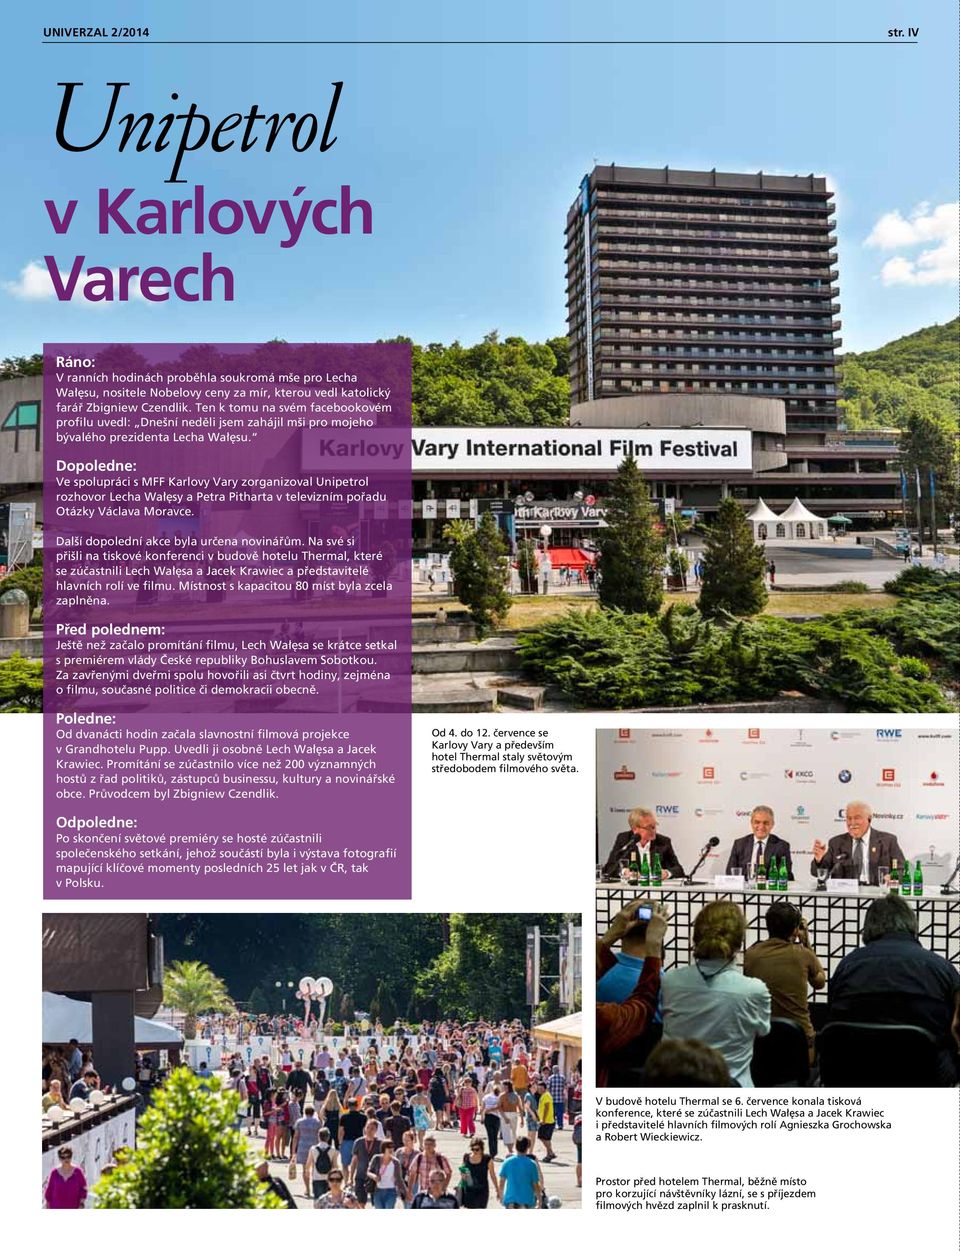 Dopoledne: Ve spolupráci s MFF Karlovy Vary zorganizoval Unipetrol rozhovor Lecha Wałęsy a Petra Pitharta v televizním pořadu Otázky Václava Moravce. Další dopolední akce byla určena novinářům.